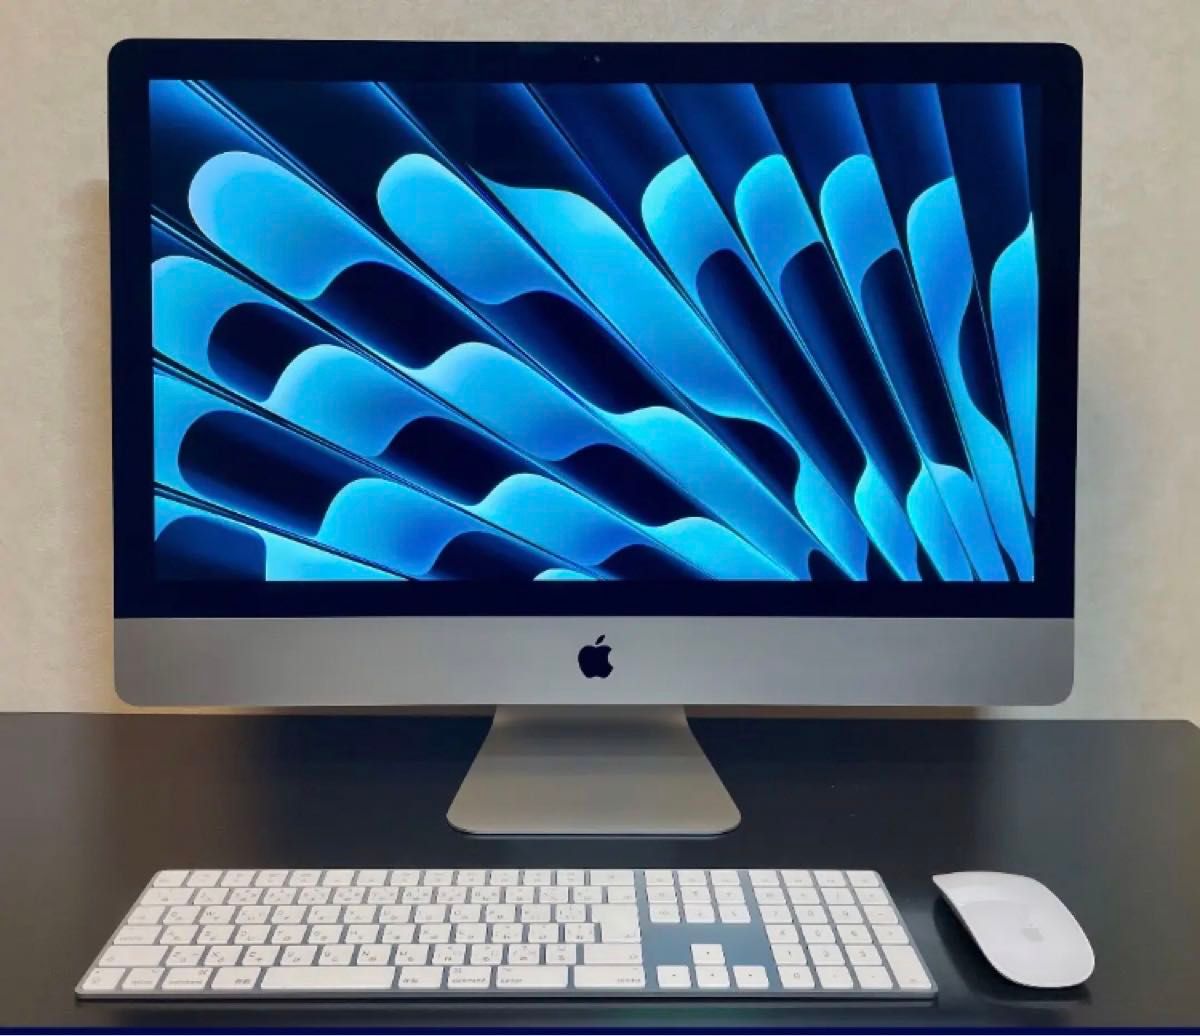 iMac (Retina 5K, 27-inch, 2019)